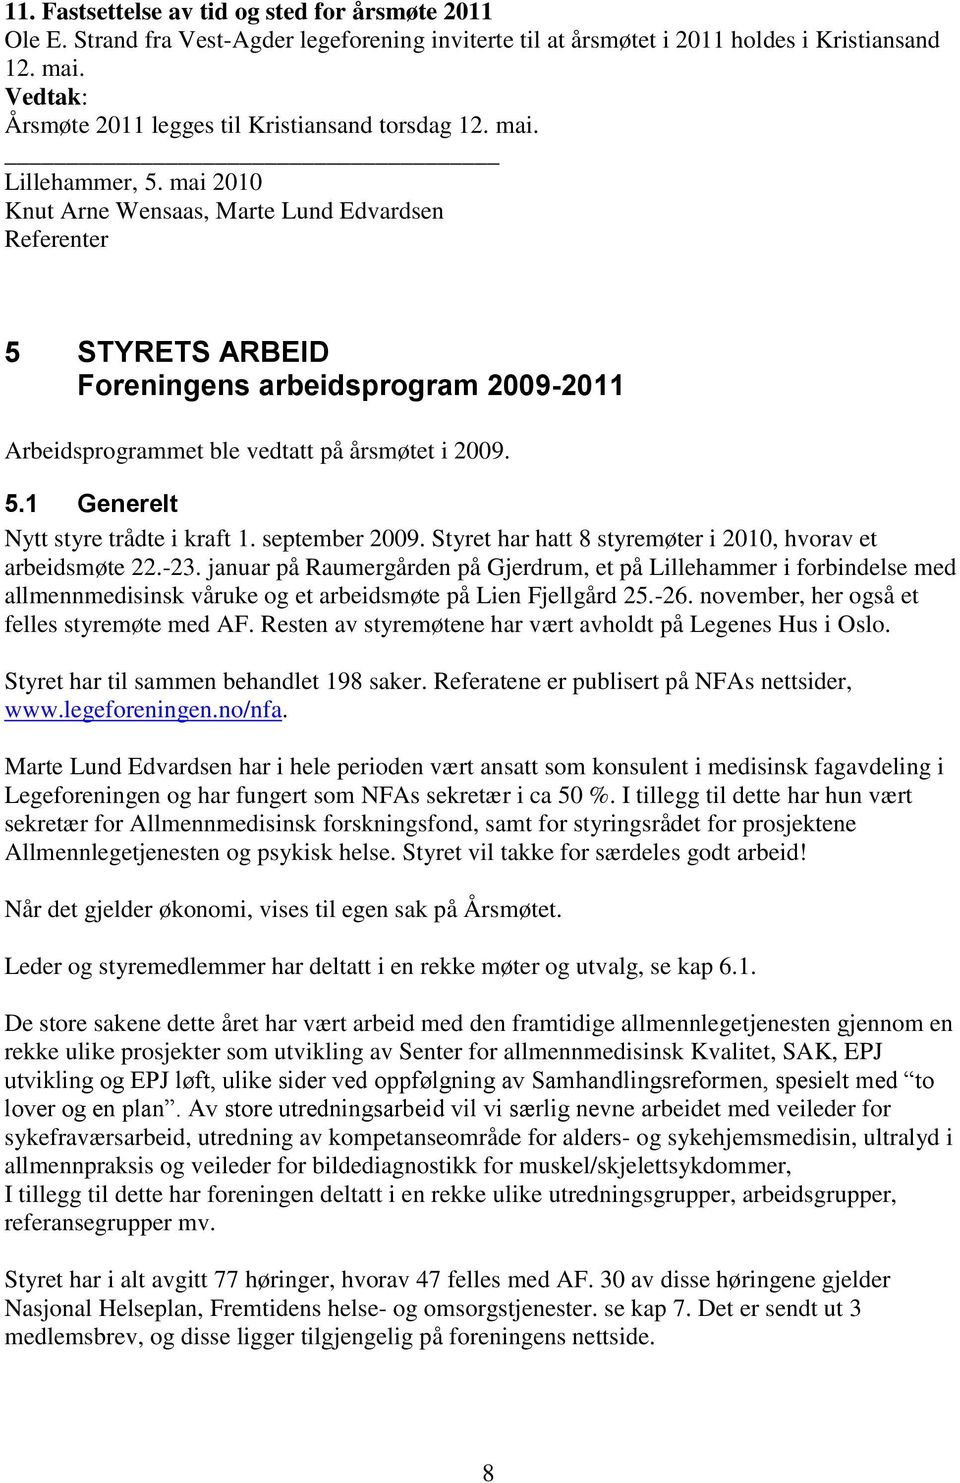 mai 2010 Knut Arne Wensaas, Marte Lund Edvardsen Referenter 5 STYRETS ARBEID Foreningens arbeidsprogram 2009-2011 Arbeidsprogrammet ble vedtatt på årsmøtet i 2009. 5.1 Generelt Nytt styre trådte i kraft 1.